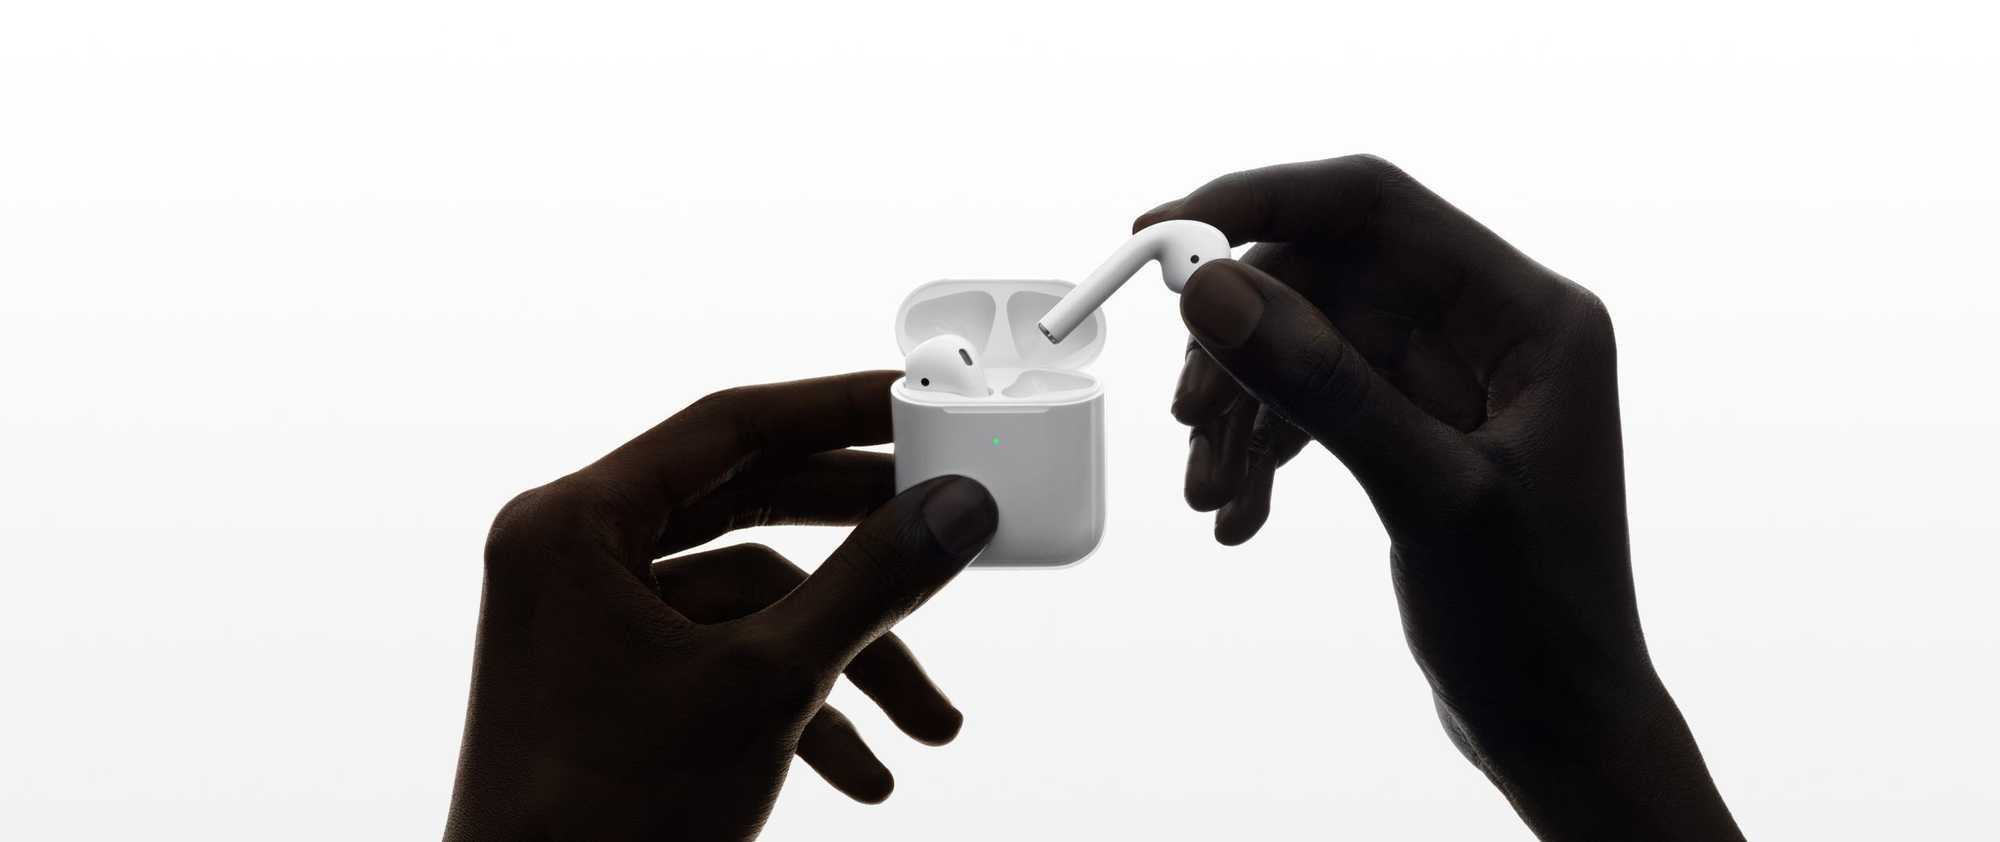 Apple stellt Neuauflage von Airpods vor